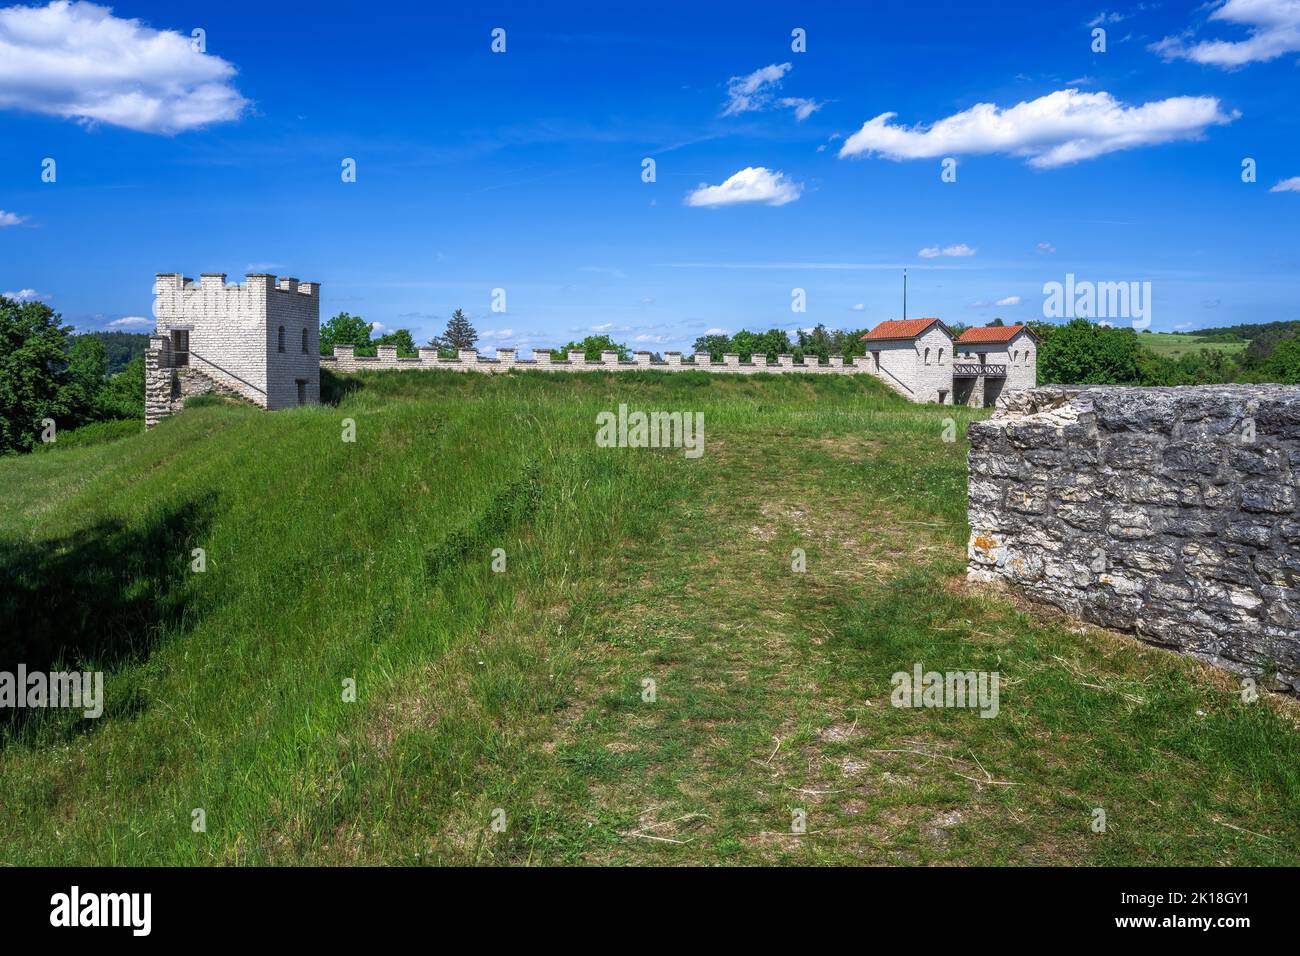 The Historic Roman Fort ruin Castra Vetoniana Stock Photo